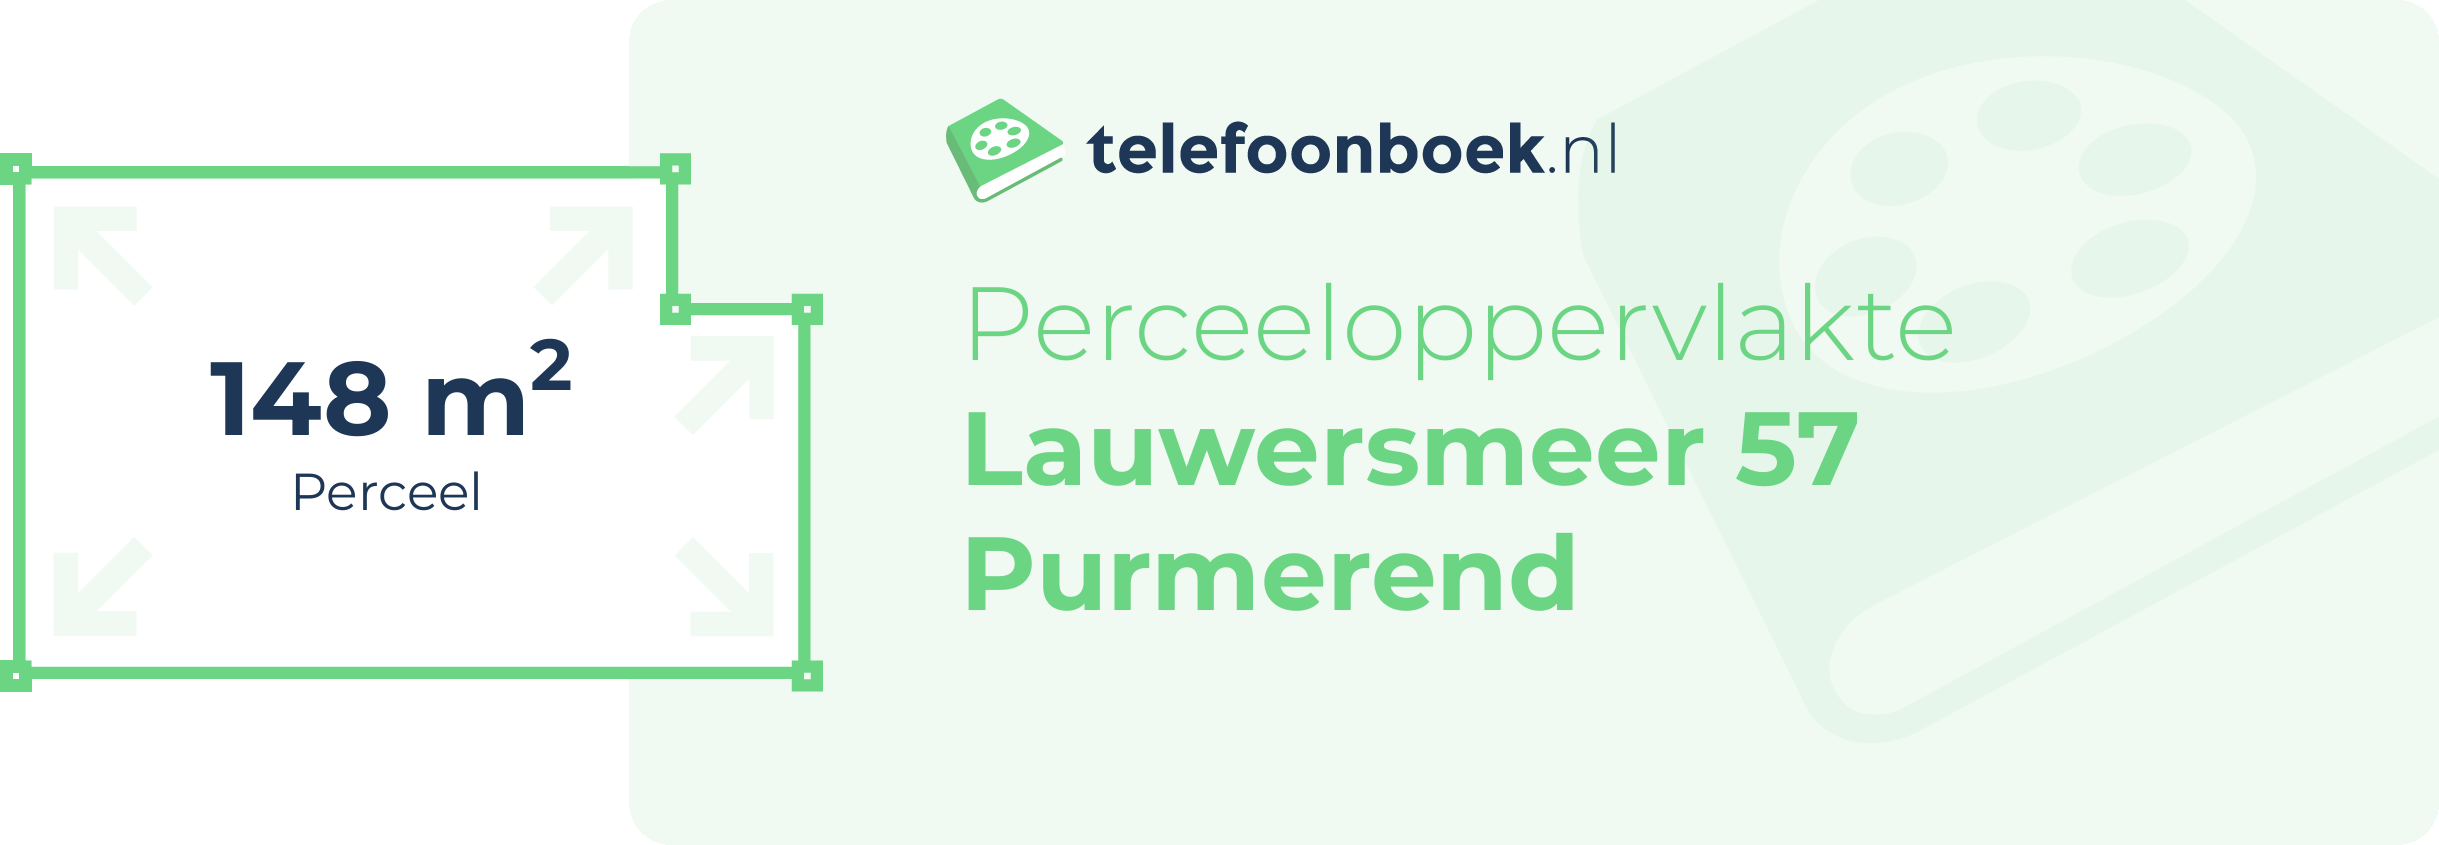 Perceeloppervlakte Lauwersmeer 57 Purmerend